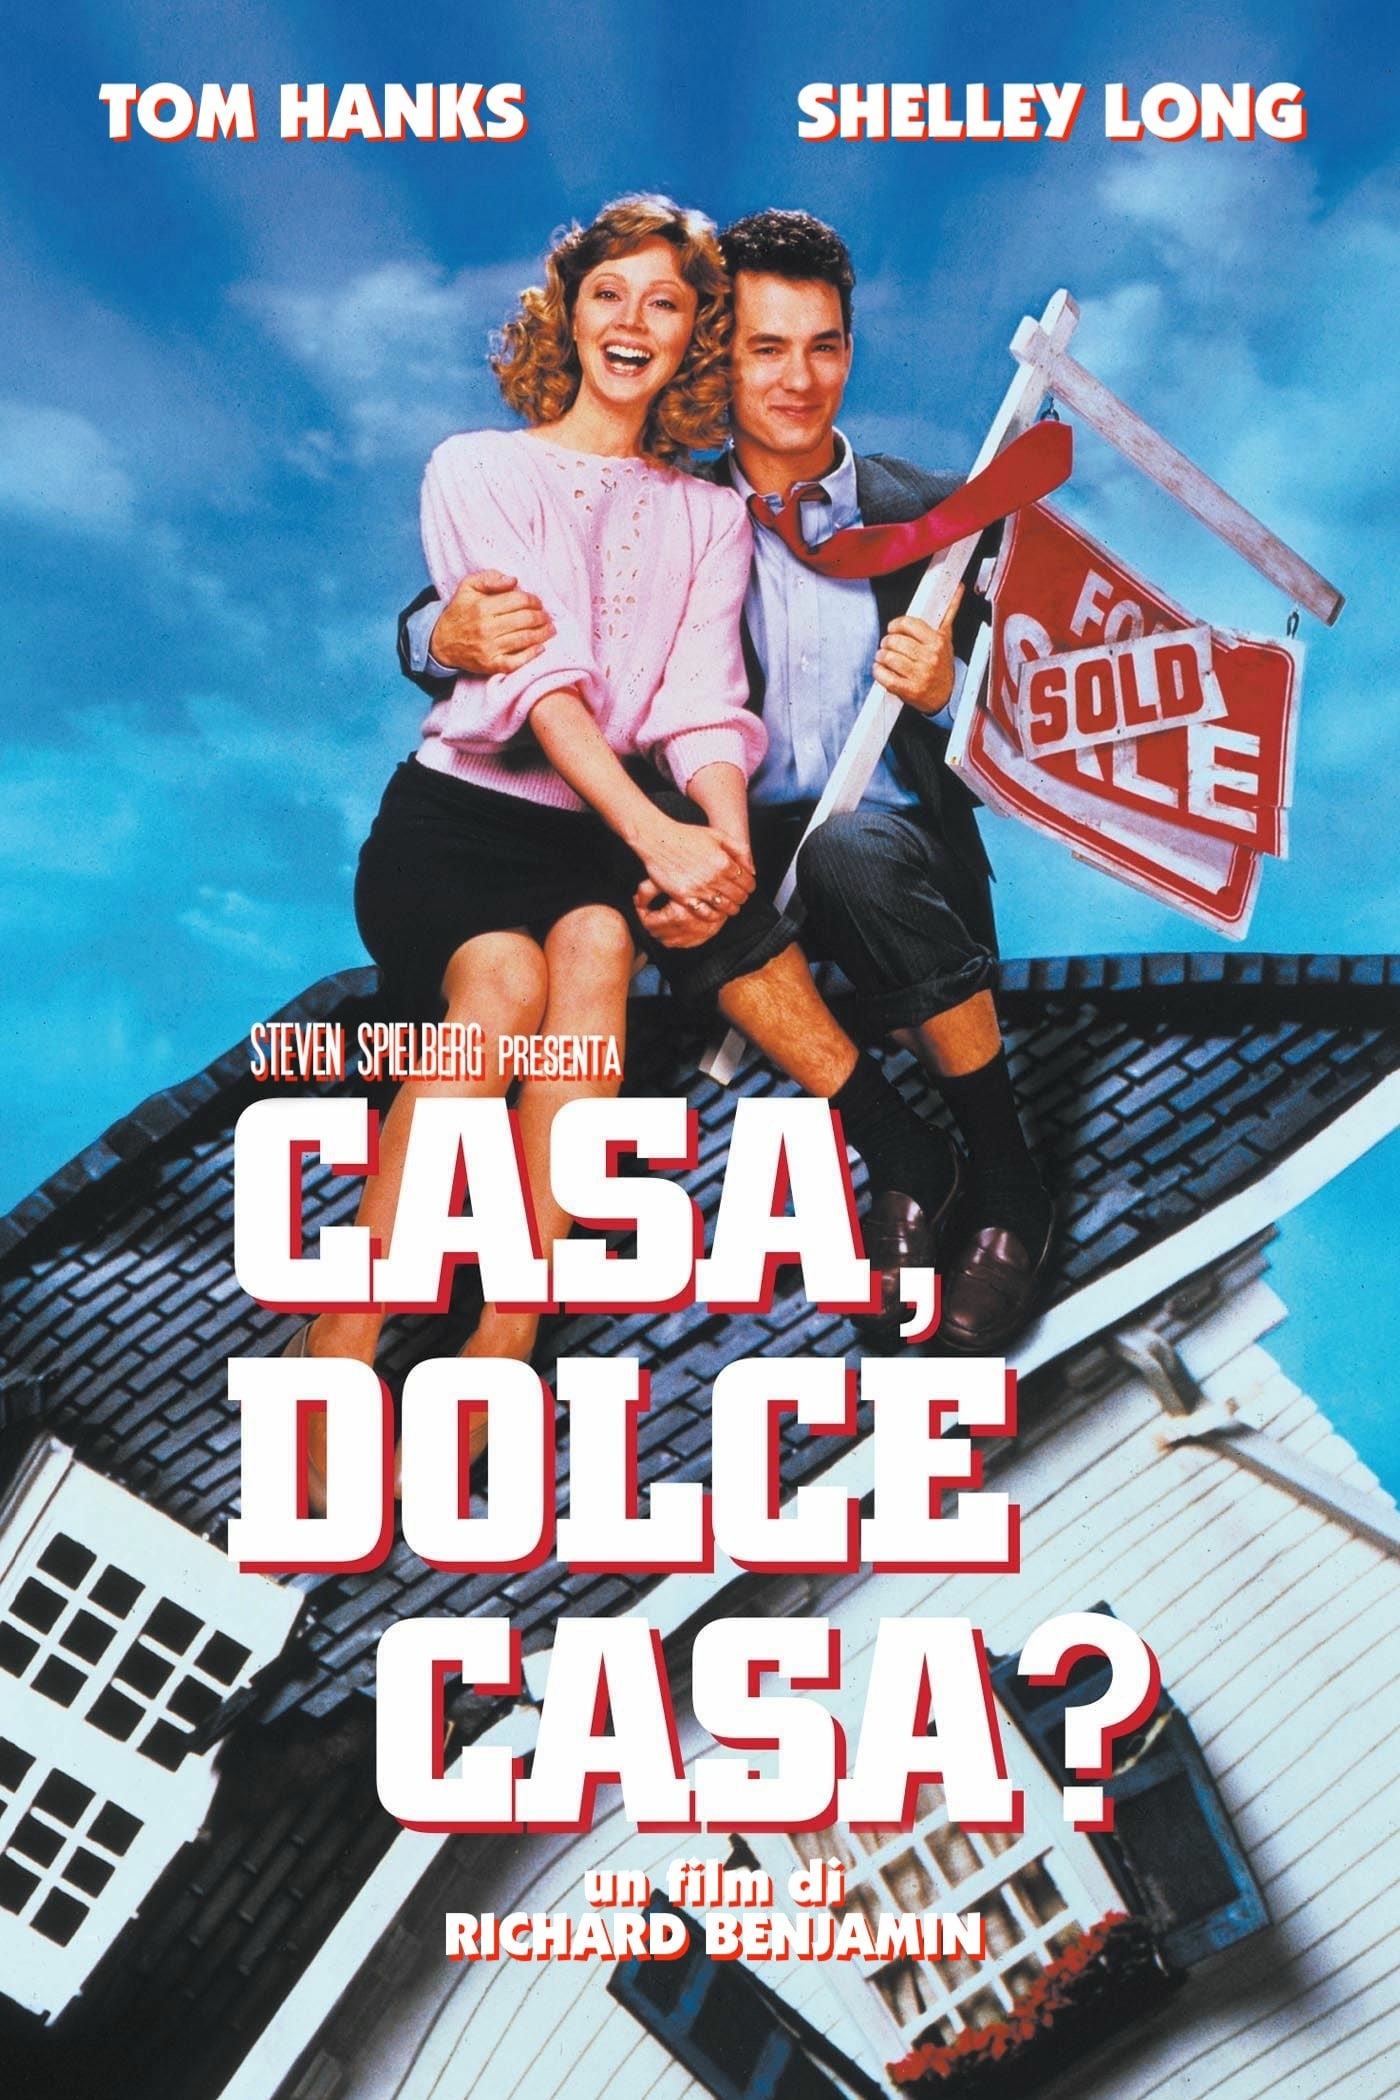 Casa, dolce casa? [HD] (1986)